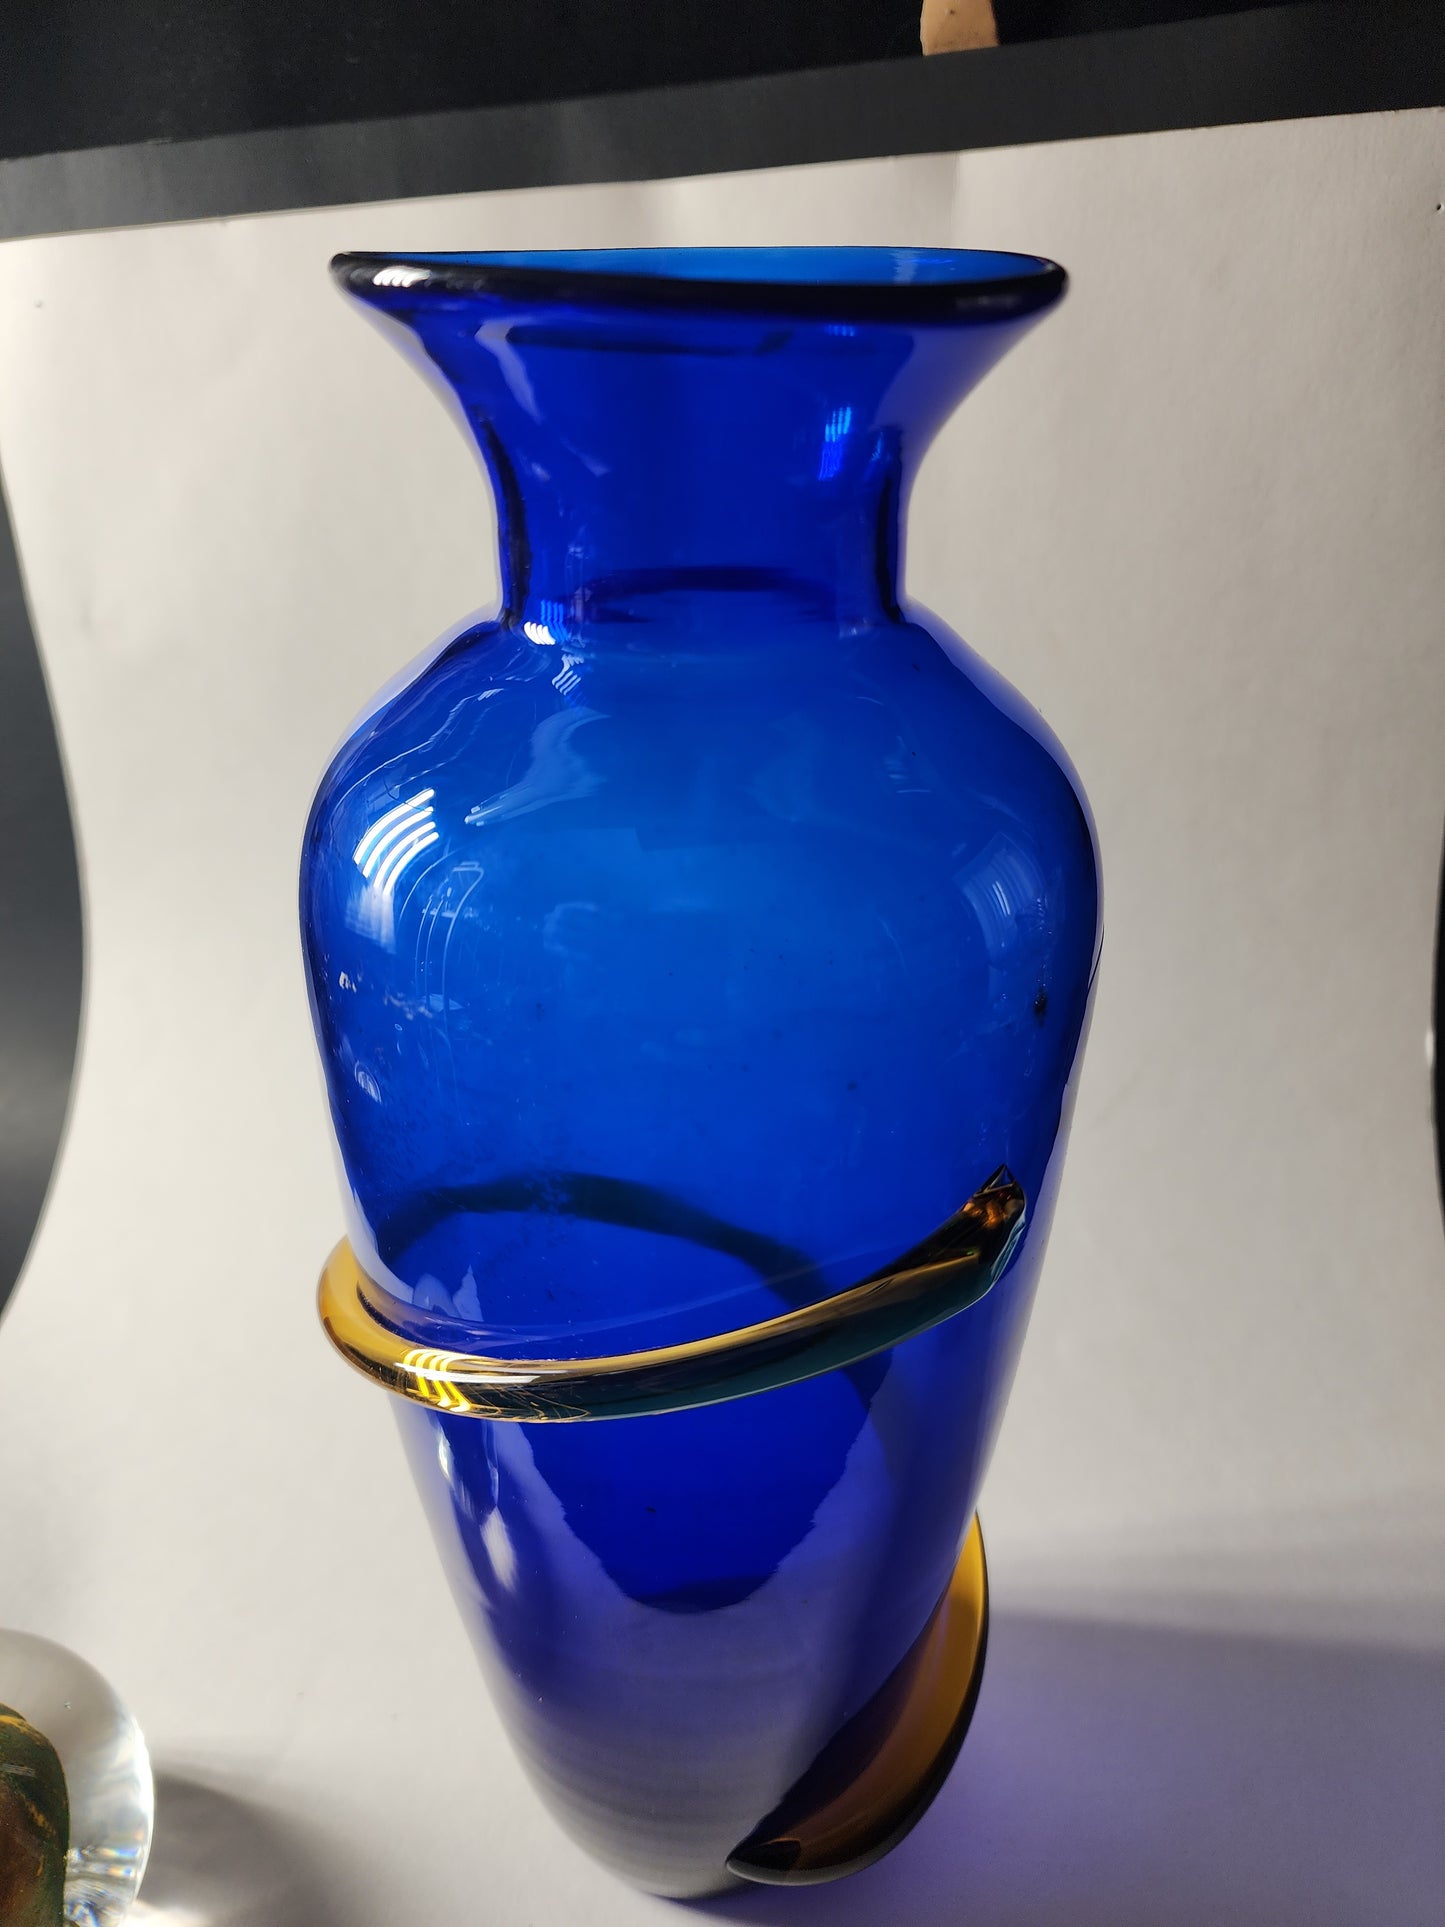 Blenko Glass cobalt blue vase handcraft Richard 2000